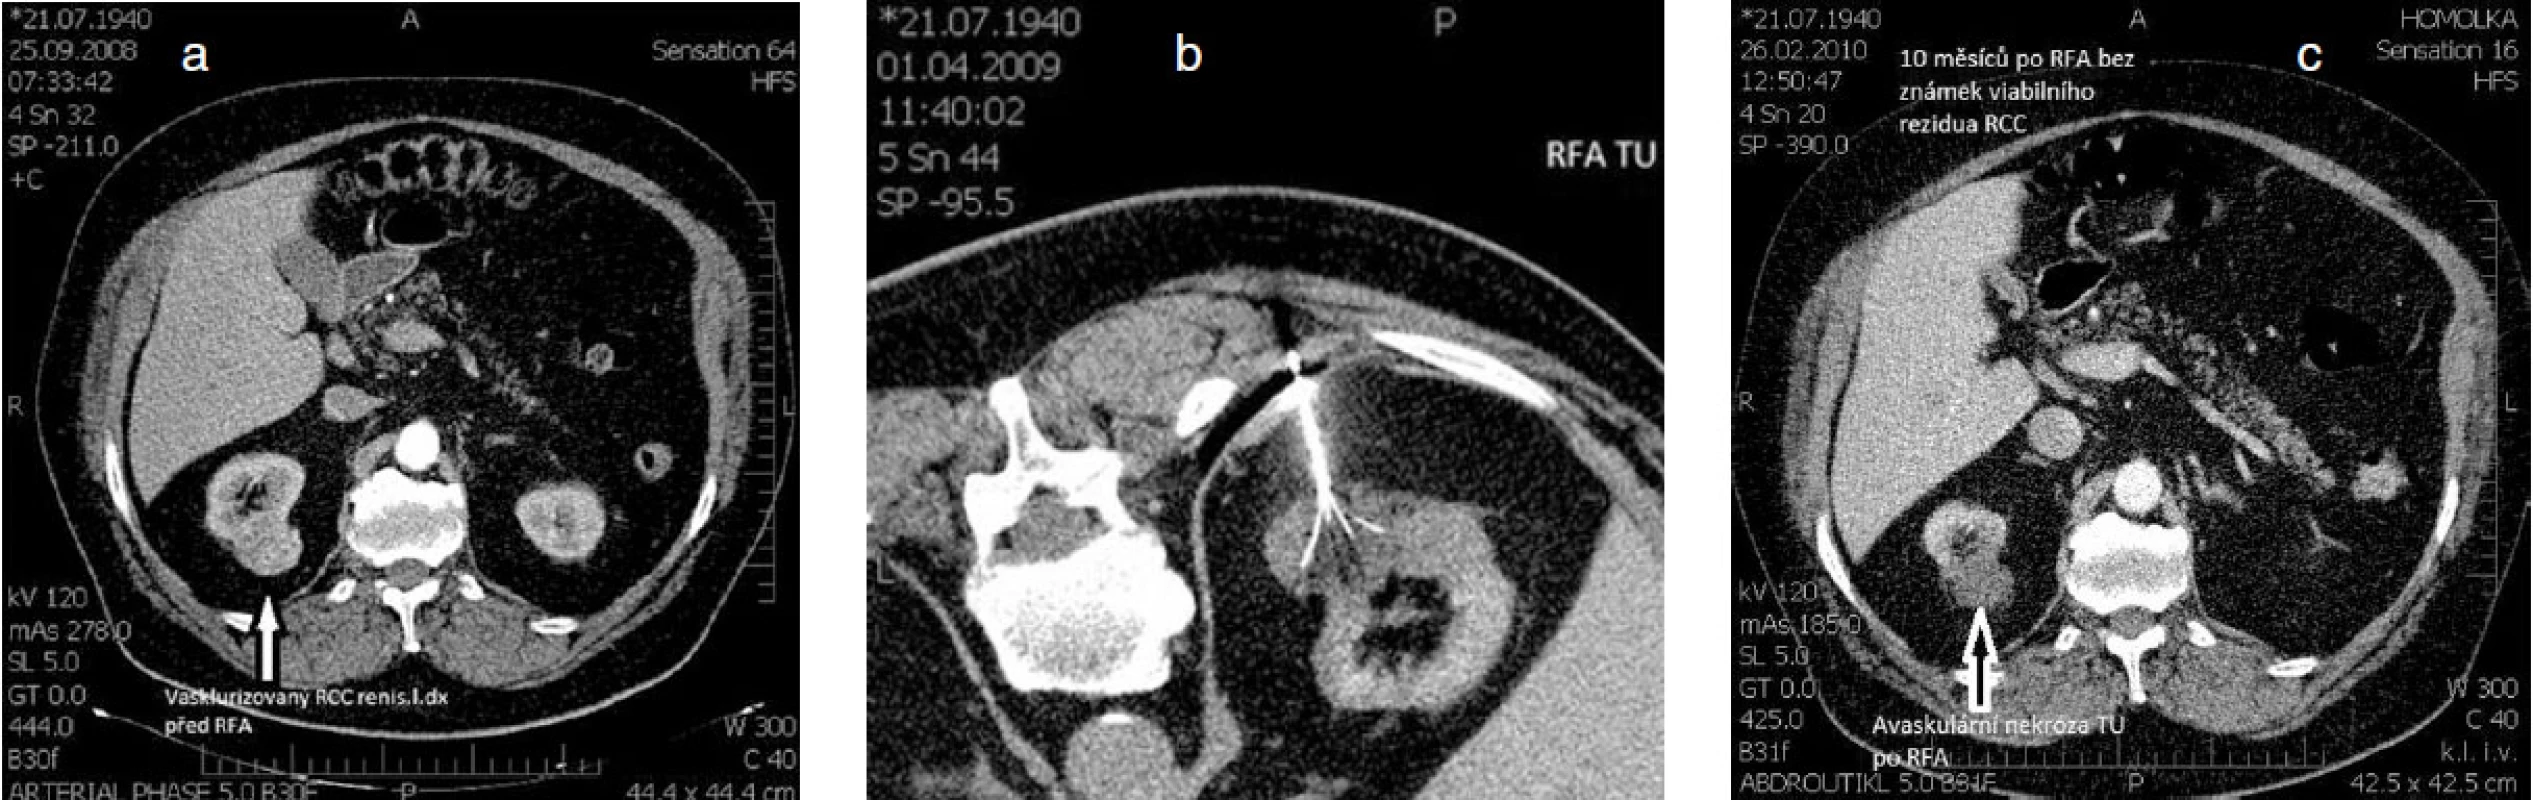 Příklad radiofrekvenční ablace karcinomu ledviny, kdy pro přidružená komplikující interní onemocnění by konveční chirurgické léčba představovala pro nemocného neúměrně vysokou zátěž a riziko a – nález vaskularizovaného karcinomu vycházejícího z dorzální části pravé ledviny při CT vyšetření, b – miniinvazivně vedená léčba pomocí perkutánní RFA navigovanou pod CT kontrolou, c – výsledný nález avaskulární nekrózy tumoru, který se nesytí po aplikací RTG kontrastní látky; dobrý výsledek léčby bez známek viabilního reziduálního karcinomu pravé ledviny s odstupem 10 měsíců po RFA